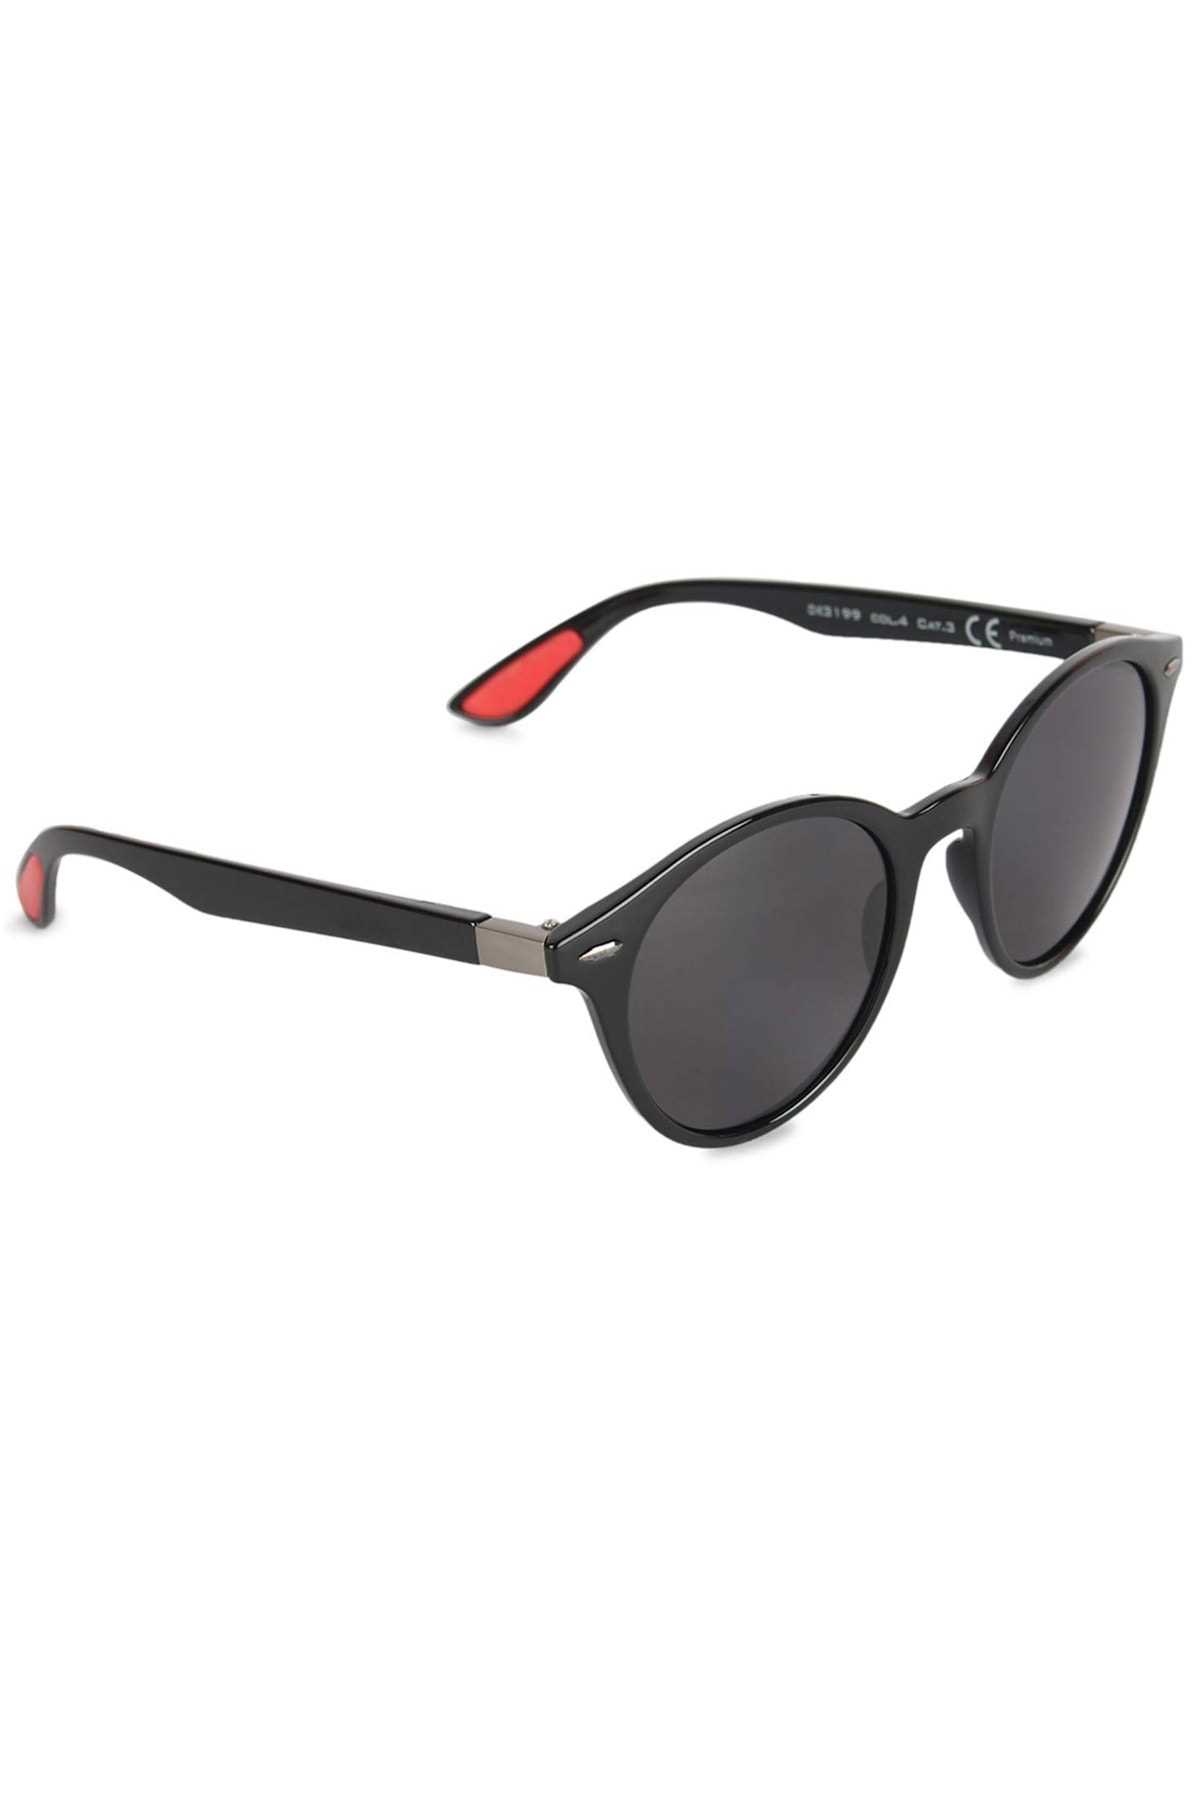 فروشگاه عینک آفتابی زنانه تابستانی برند Daniel Klein رنگ مشکی کد ty119757833